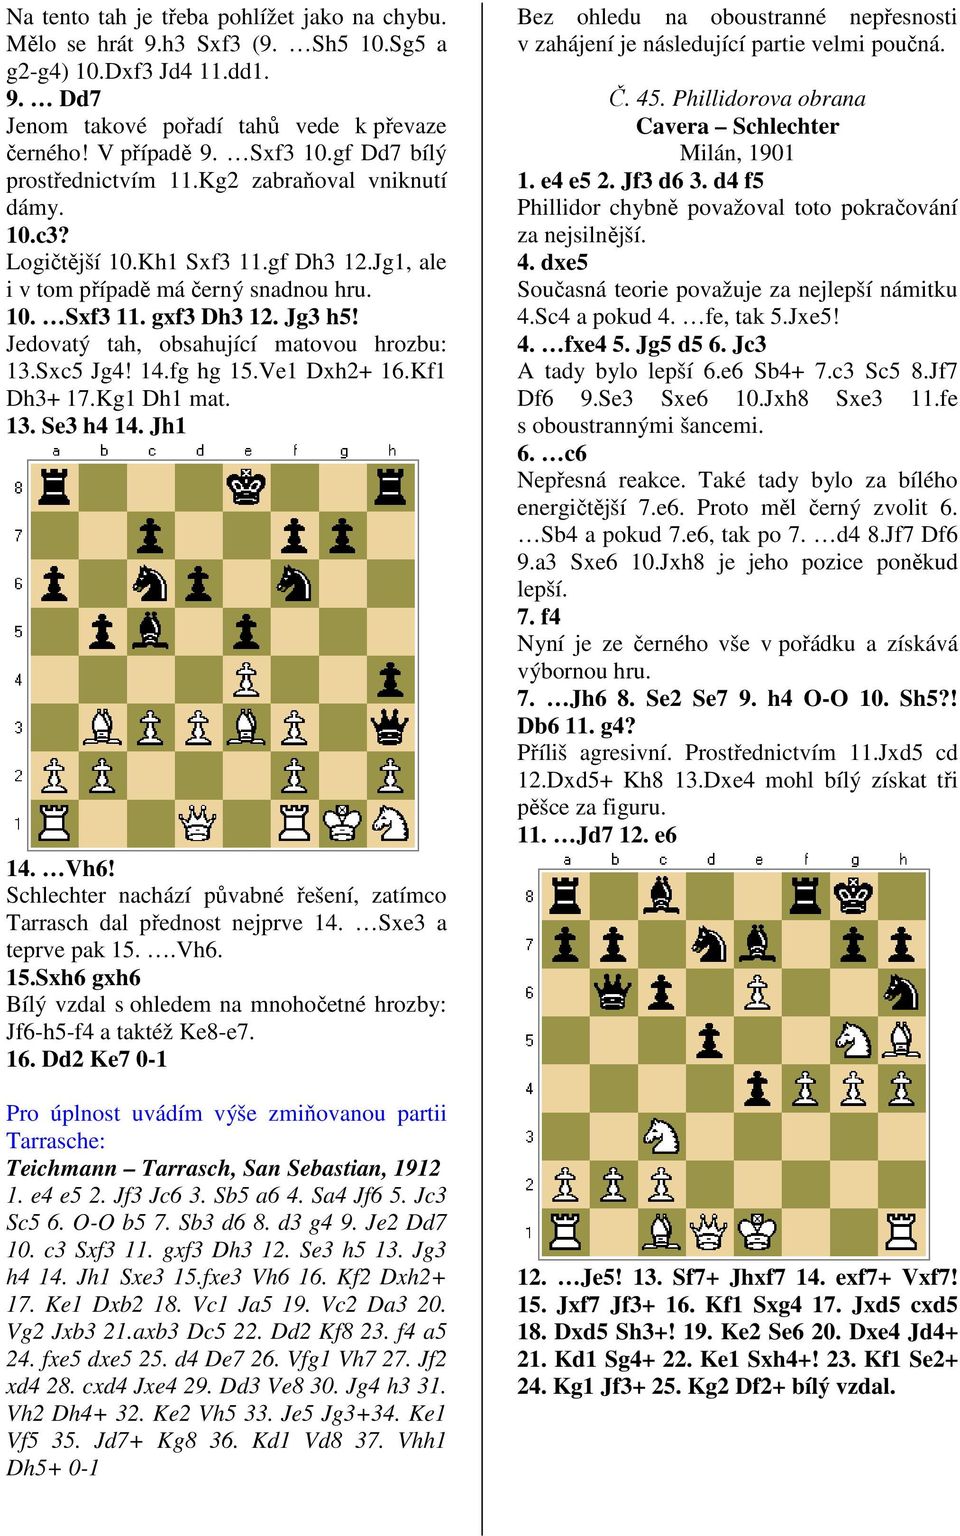 Jedovatý tah, obsahující matovou hrozbu: 13.Sxc5 Jg4! 14.fg hg 15.Ve1 Dxh2+ 16.Kf1 Dh3+ 17.Kg1 Dh1 mat. 13. Se3 h4 14. Jh1 14. Vh6!